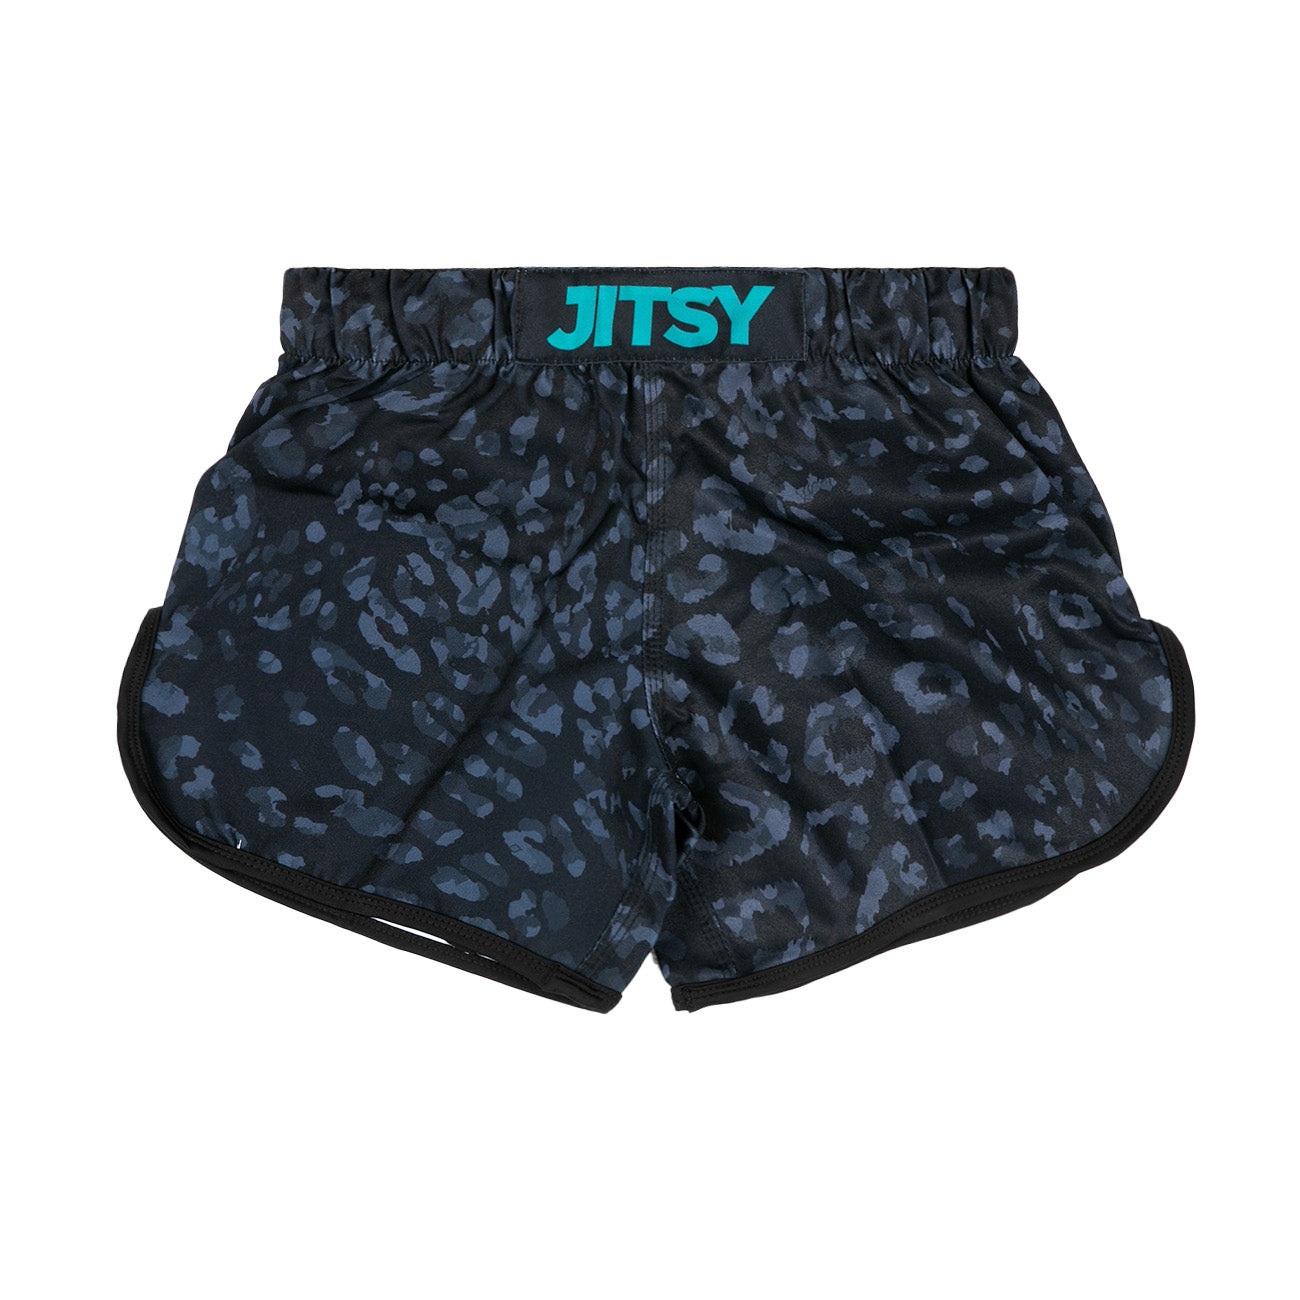 Jitsy Hybrid Shorts Black Ocelot - Kids